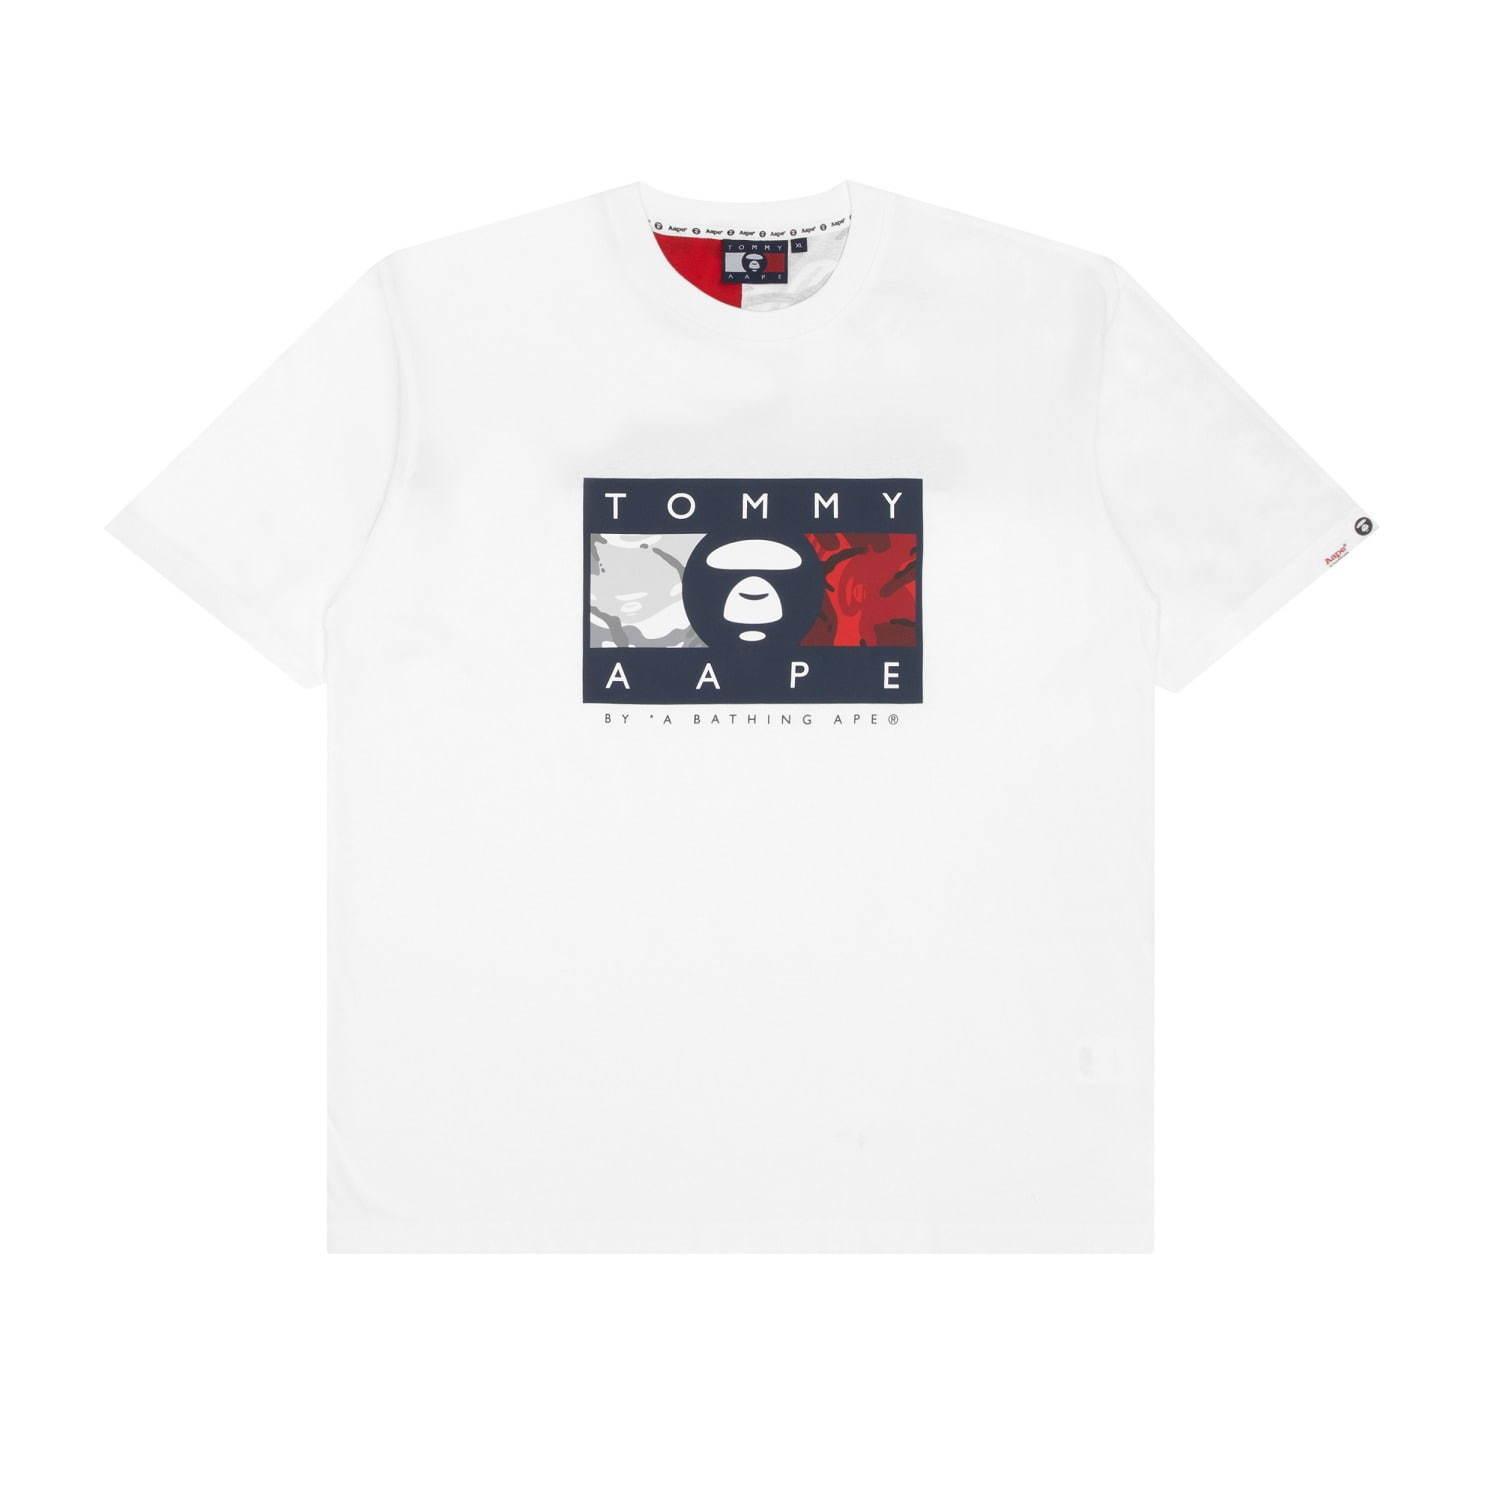 エーエイプ×トミー ジーンズ - オリジナルカモ柄のTシャツやポロシャツ、デニムジャケットなど コピー